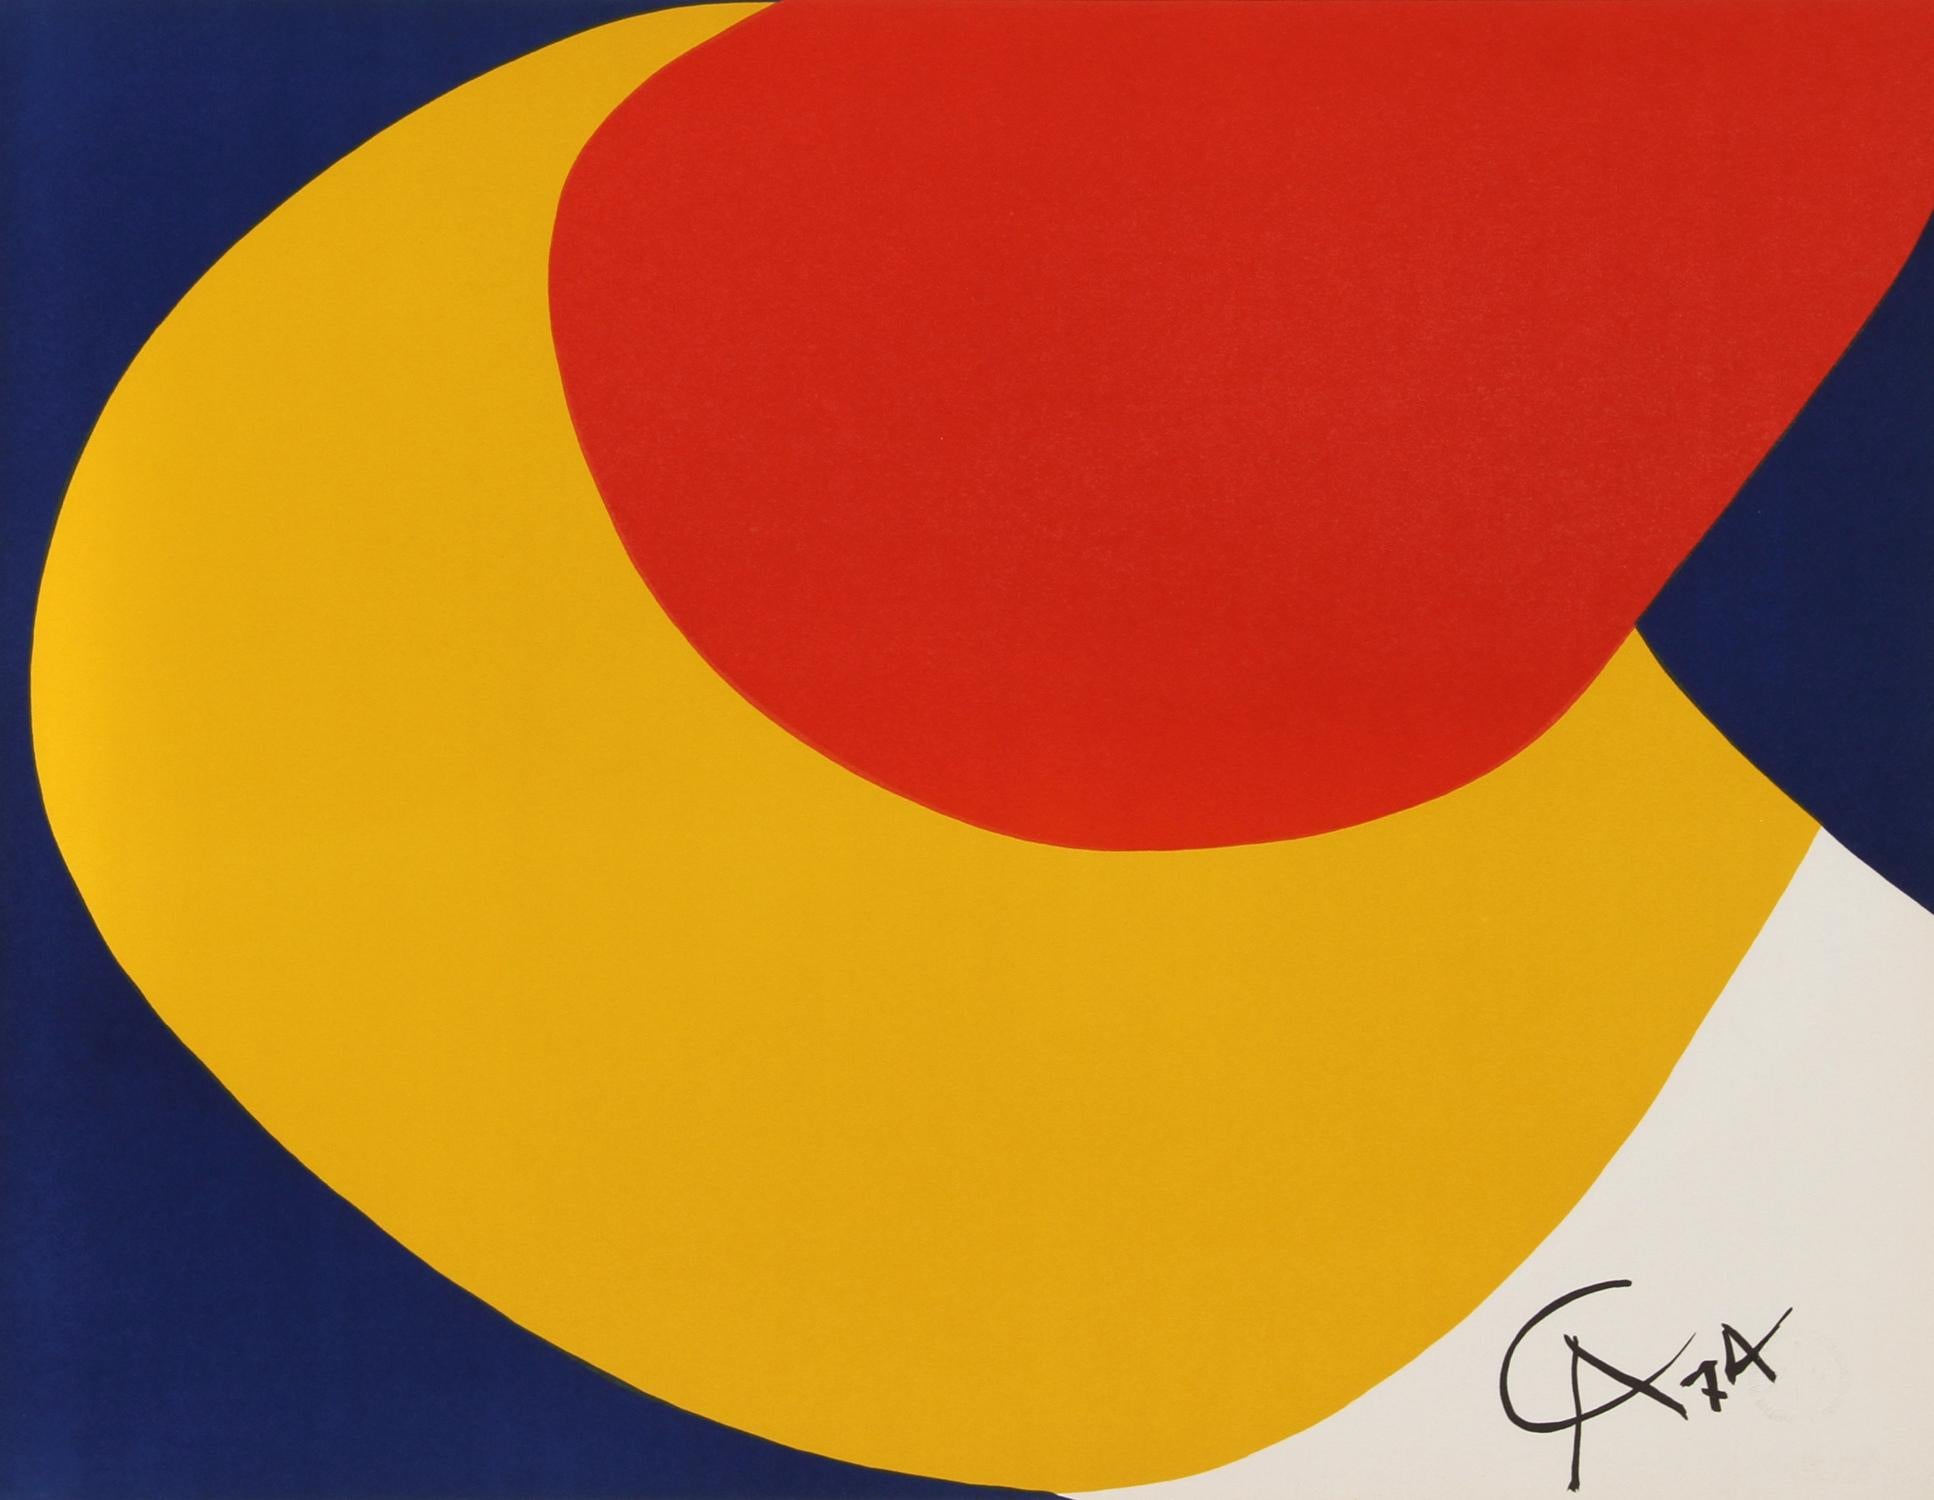 Artistics : Alexander Calder (d'après) (Américain, 1898-1976)
Titre : Couleurs volantes pour Braniff Airlines
Année : 1974
Moyen : Lithographie, signée dans la plaque
Taille : 50,8 cm x 66,04 cm (20 in. x 26 in.)